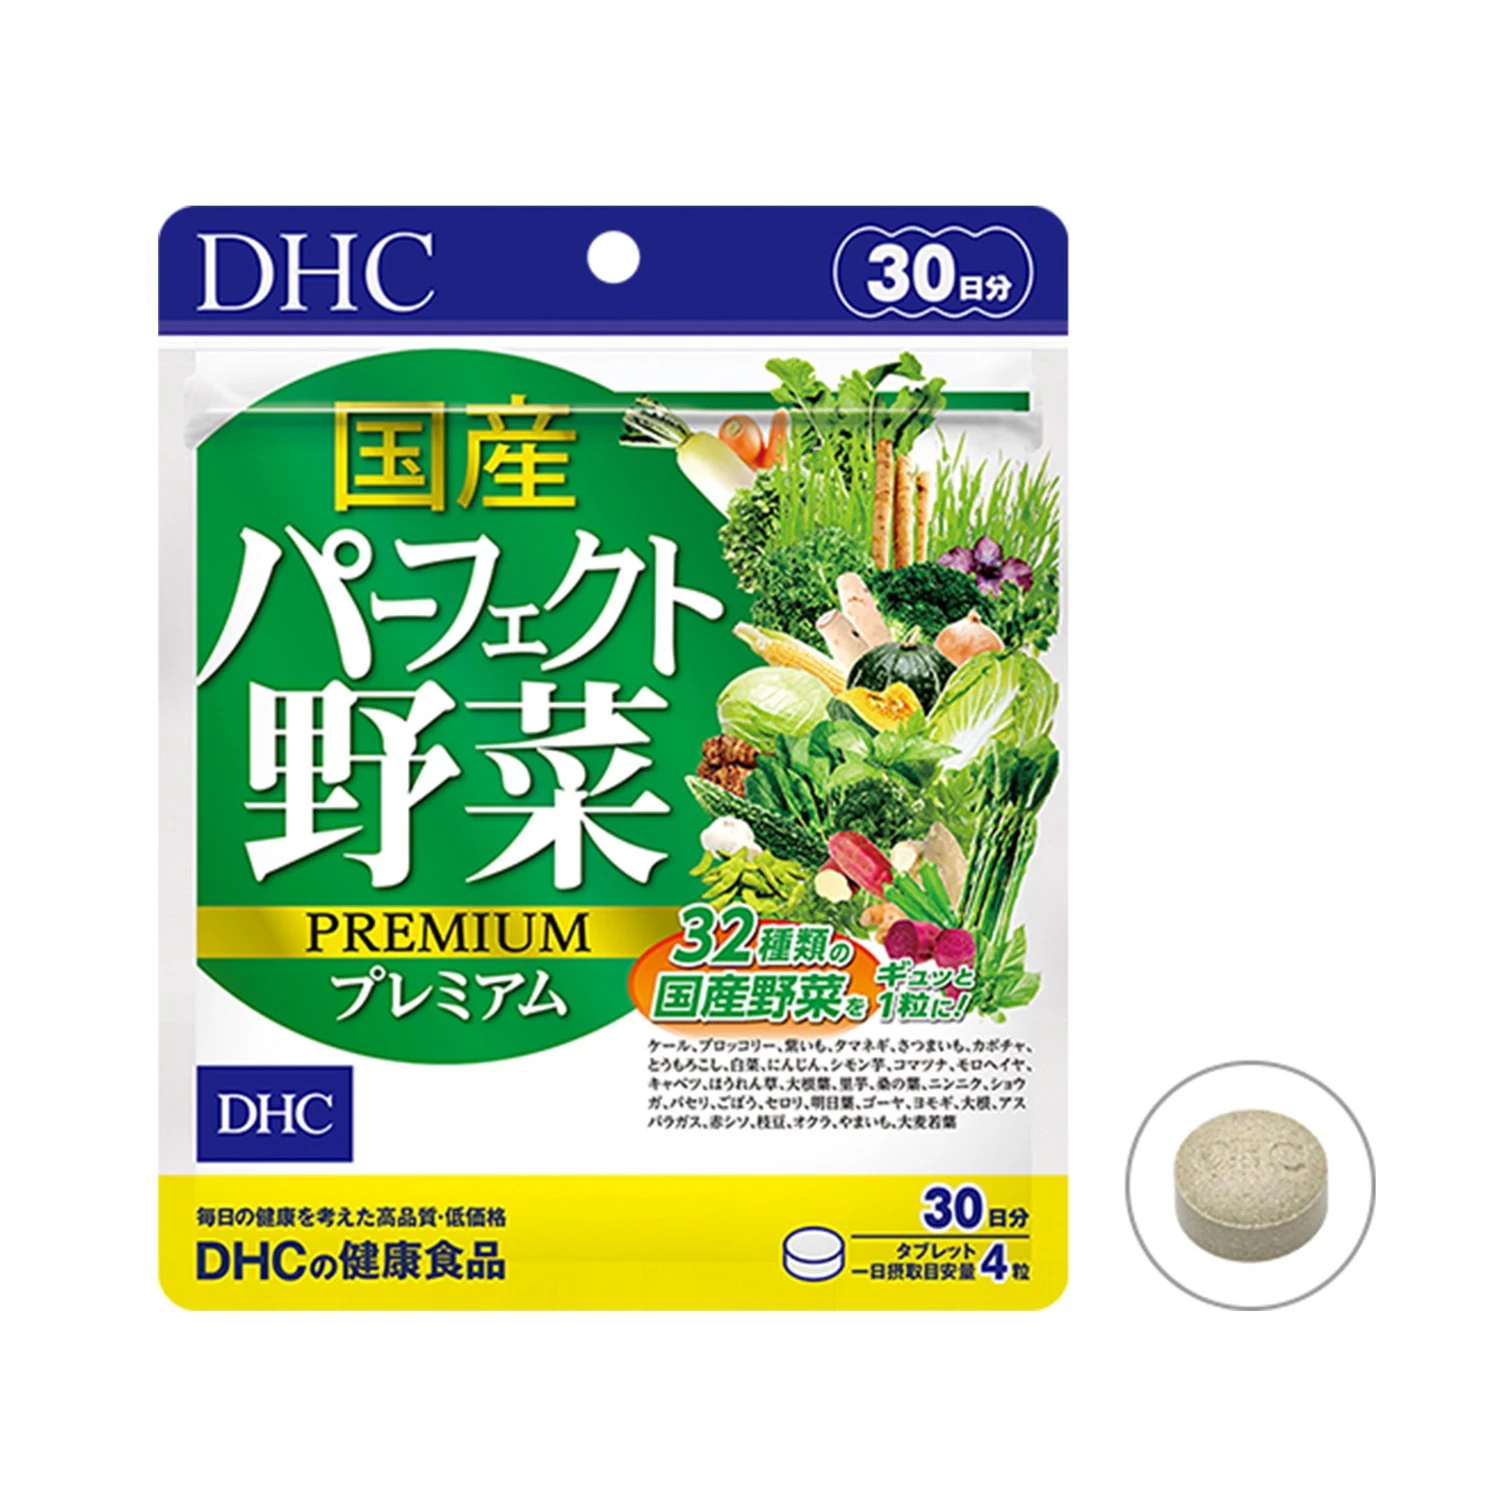 Viên uống rau củ DHC Perfect Vegetable Premium Japanese Harvest 30 ngày